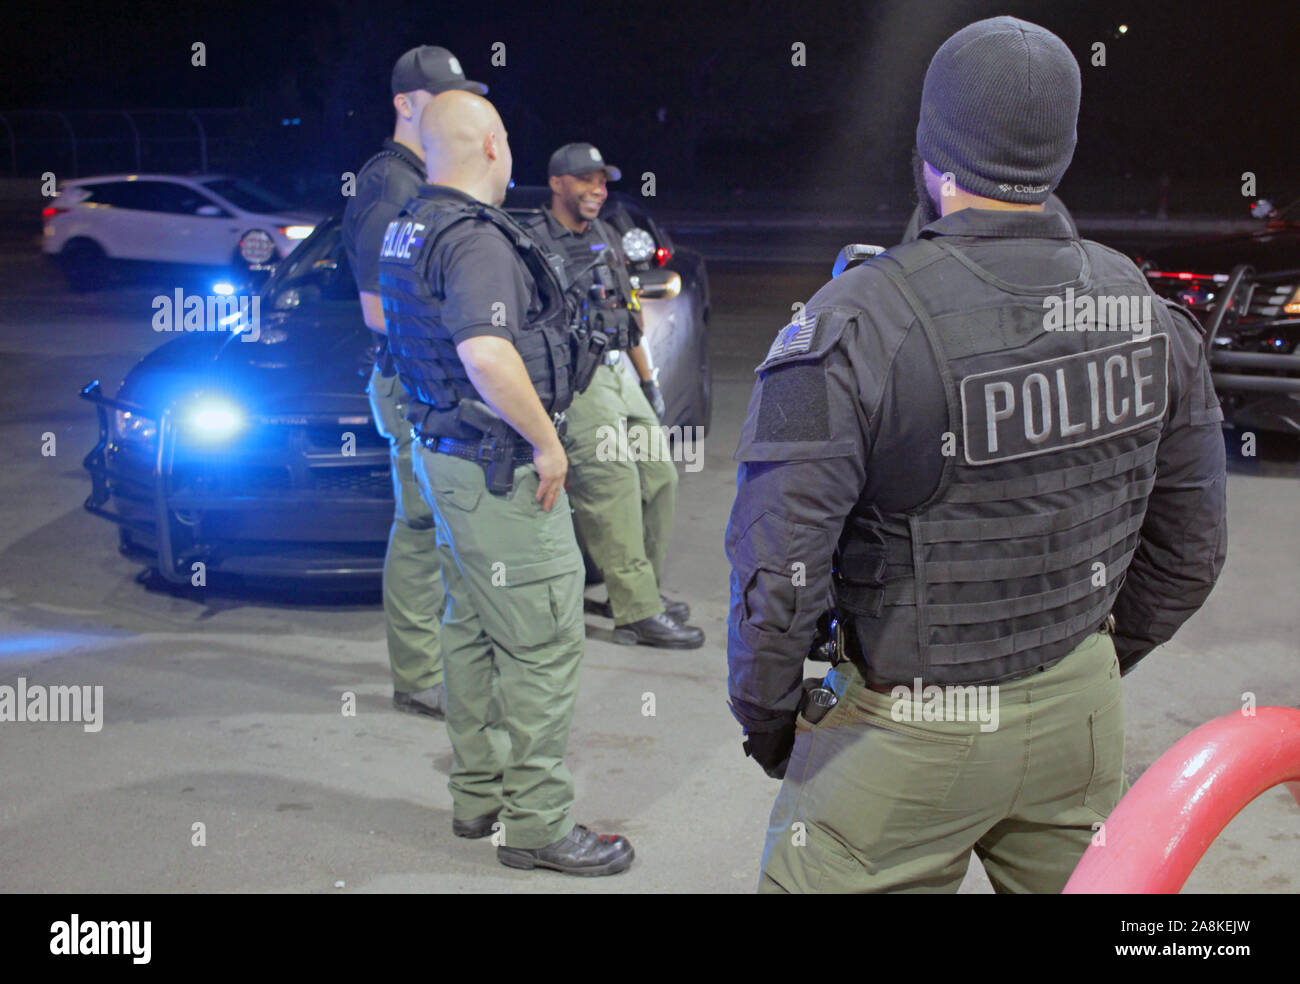 Les agents des Opérations spéciales de la police de Detroit se rassemblent à une station d'essence après avoir été appelé à une perturbation, Detroit, Michigan, USA Banque D'Images